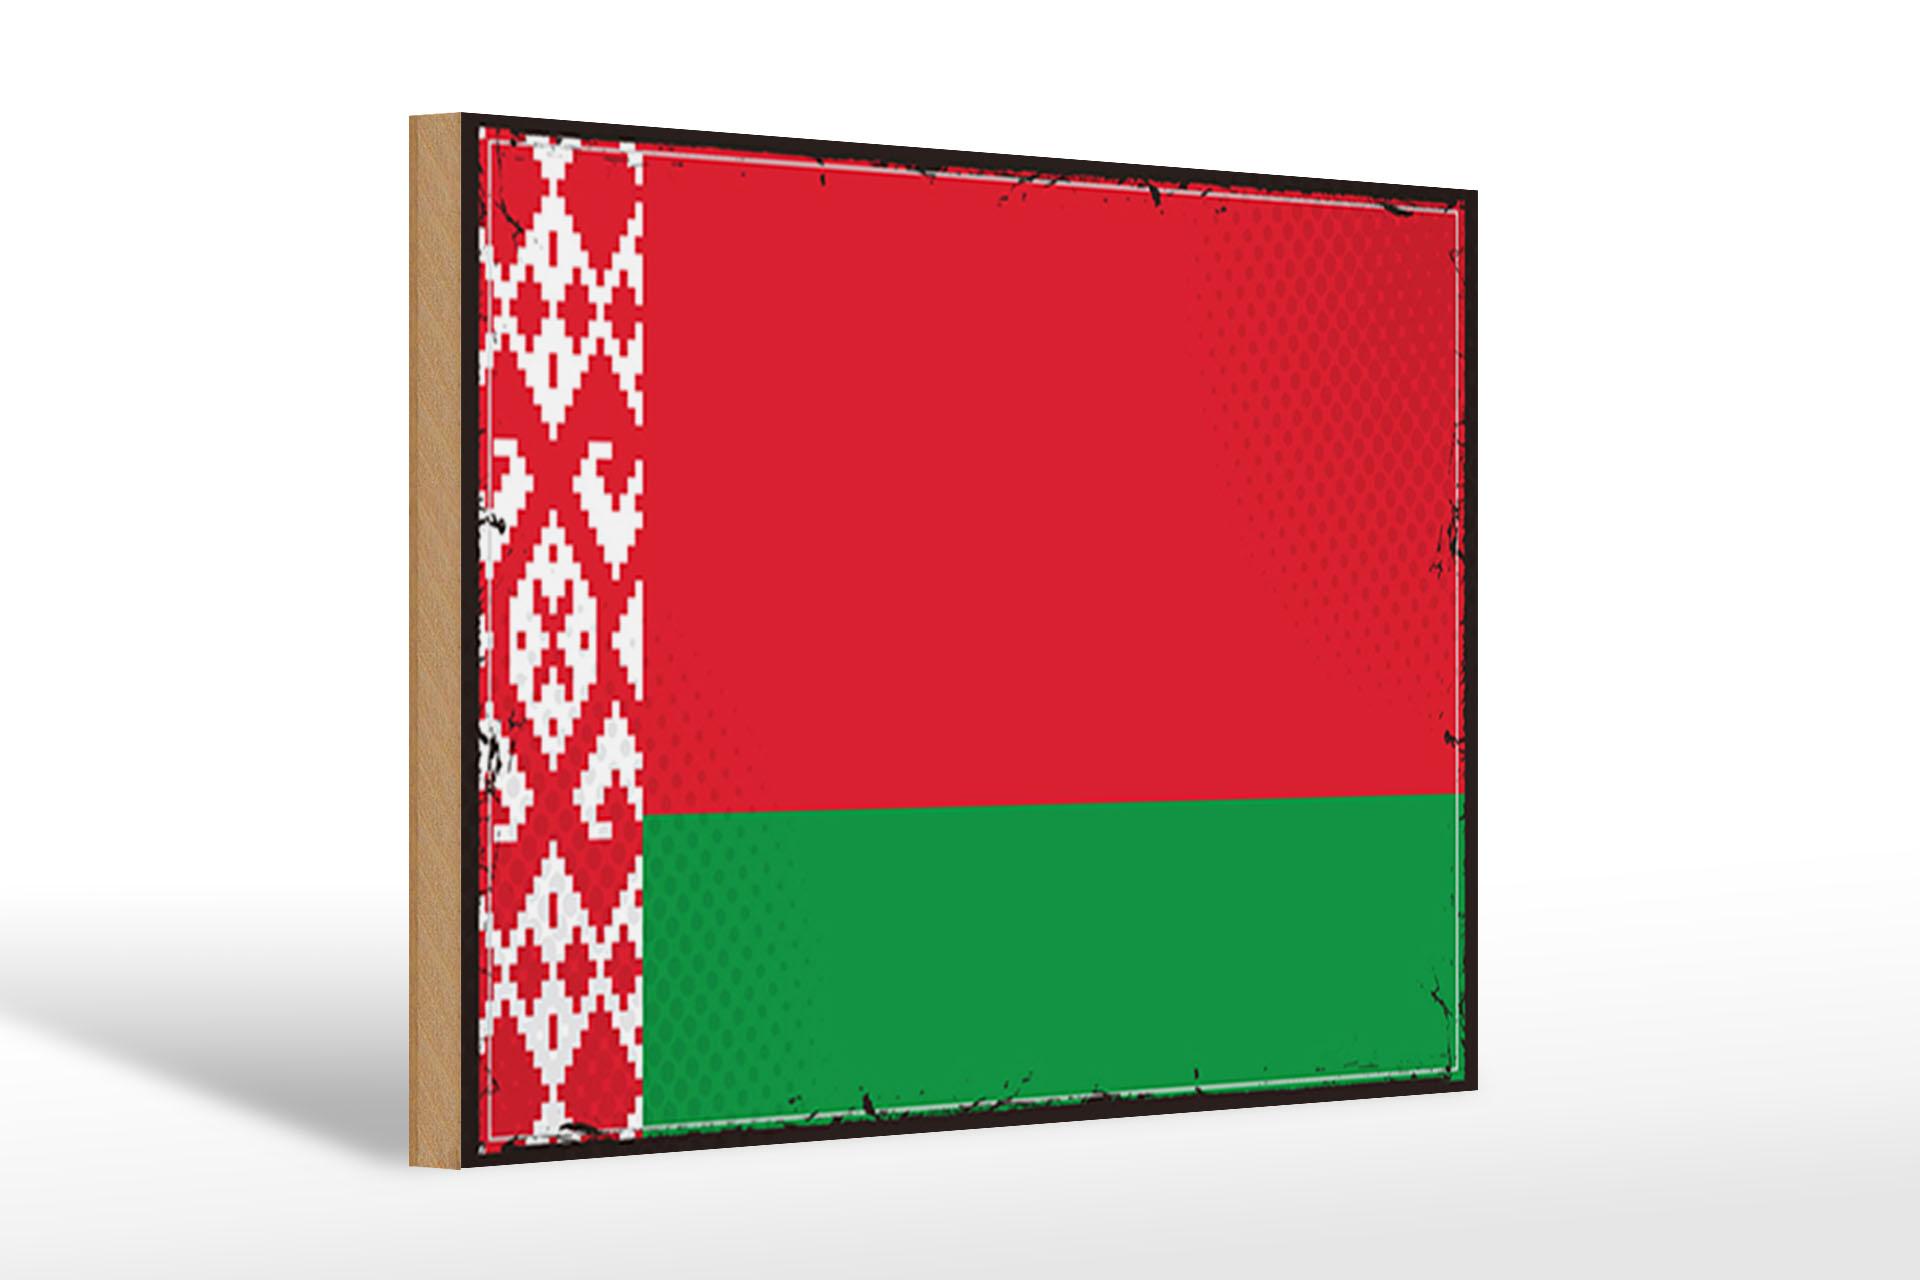 Holzschild Flagge Weißrussland 30x20 cm Retro Flag Belarus Schild wooden sign